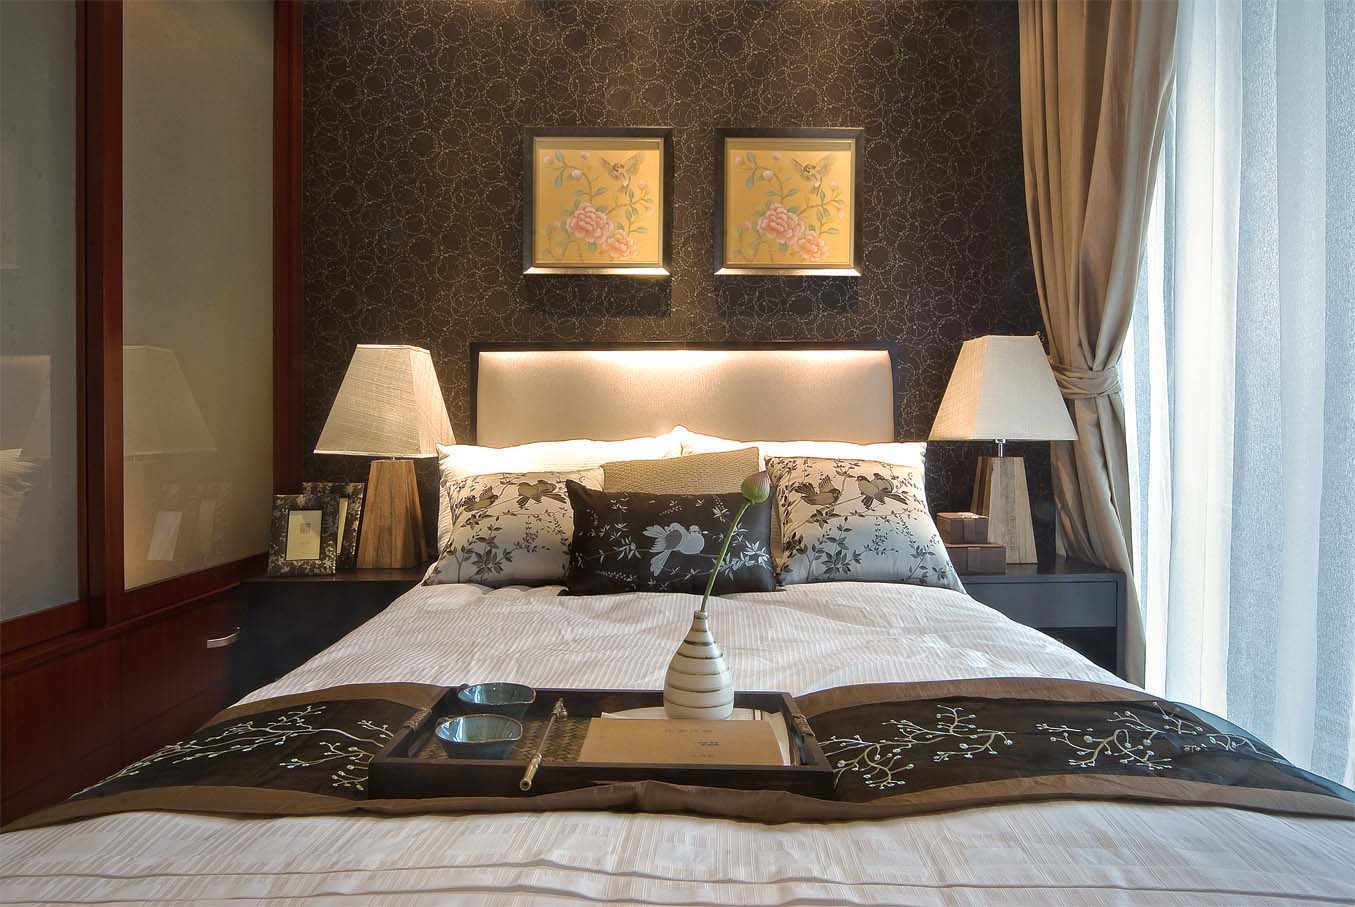 中式风格 三居 卧室图片来自紫禁尚品装饰孟莹在中式风格_远铭悦世家的分享